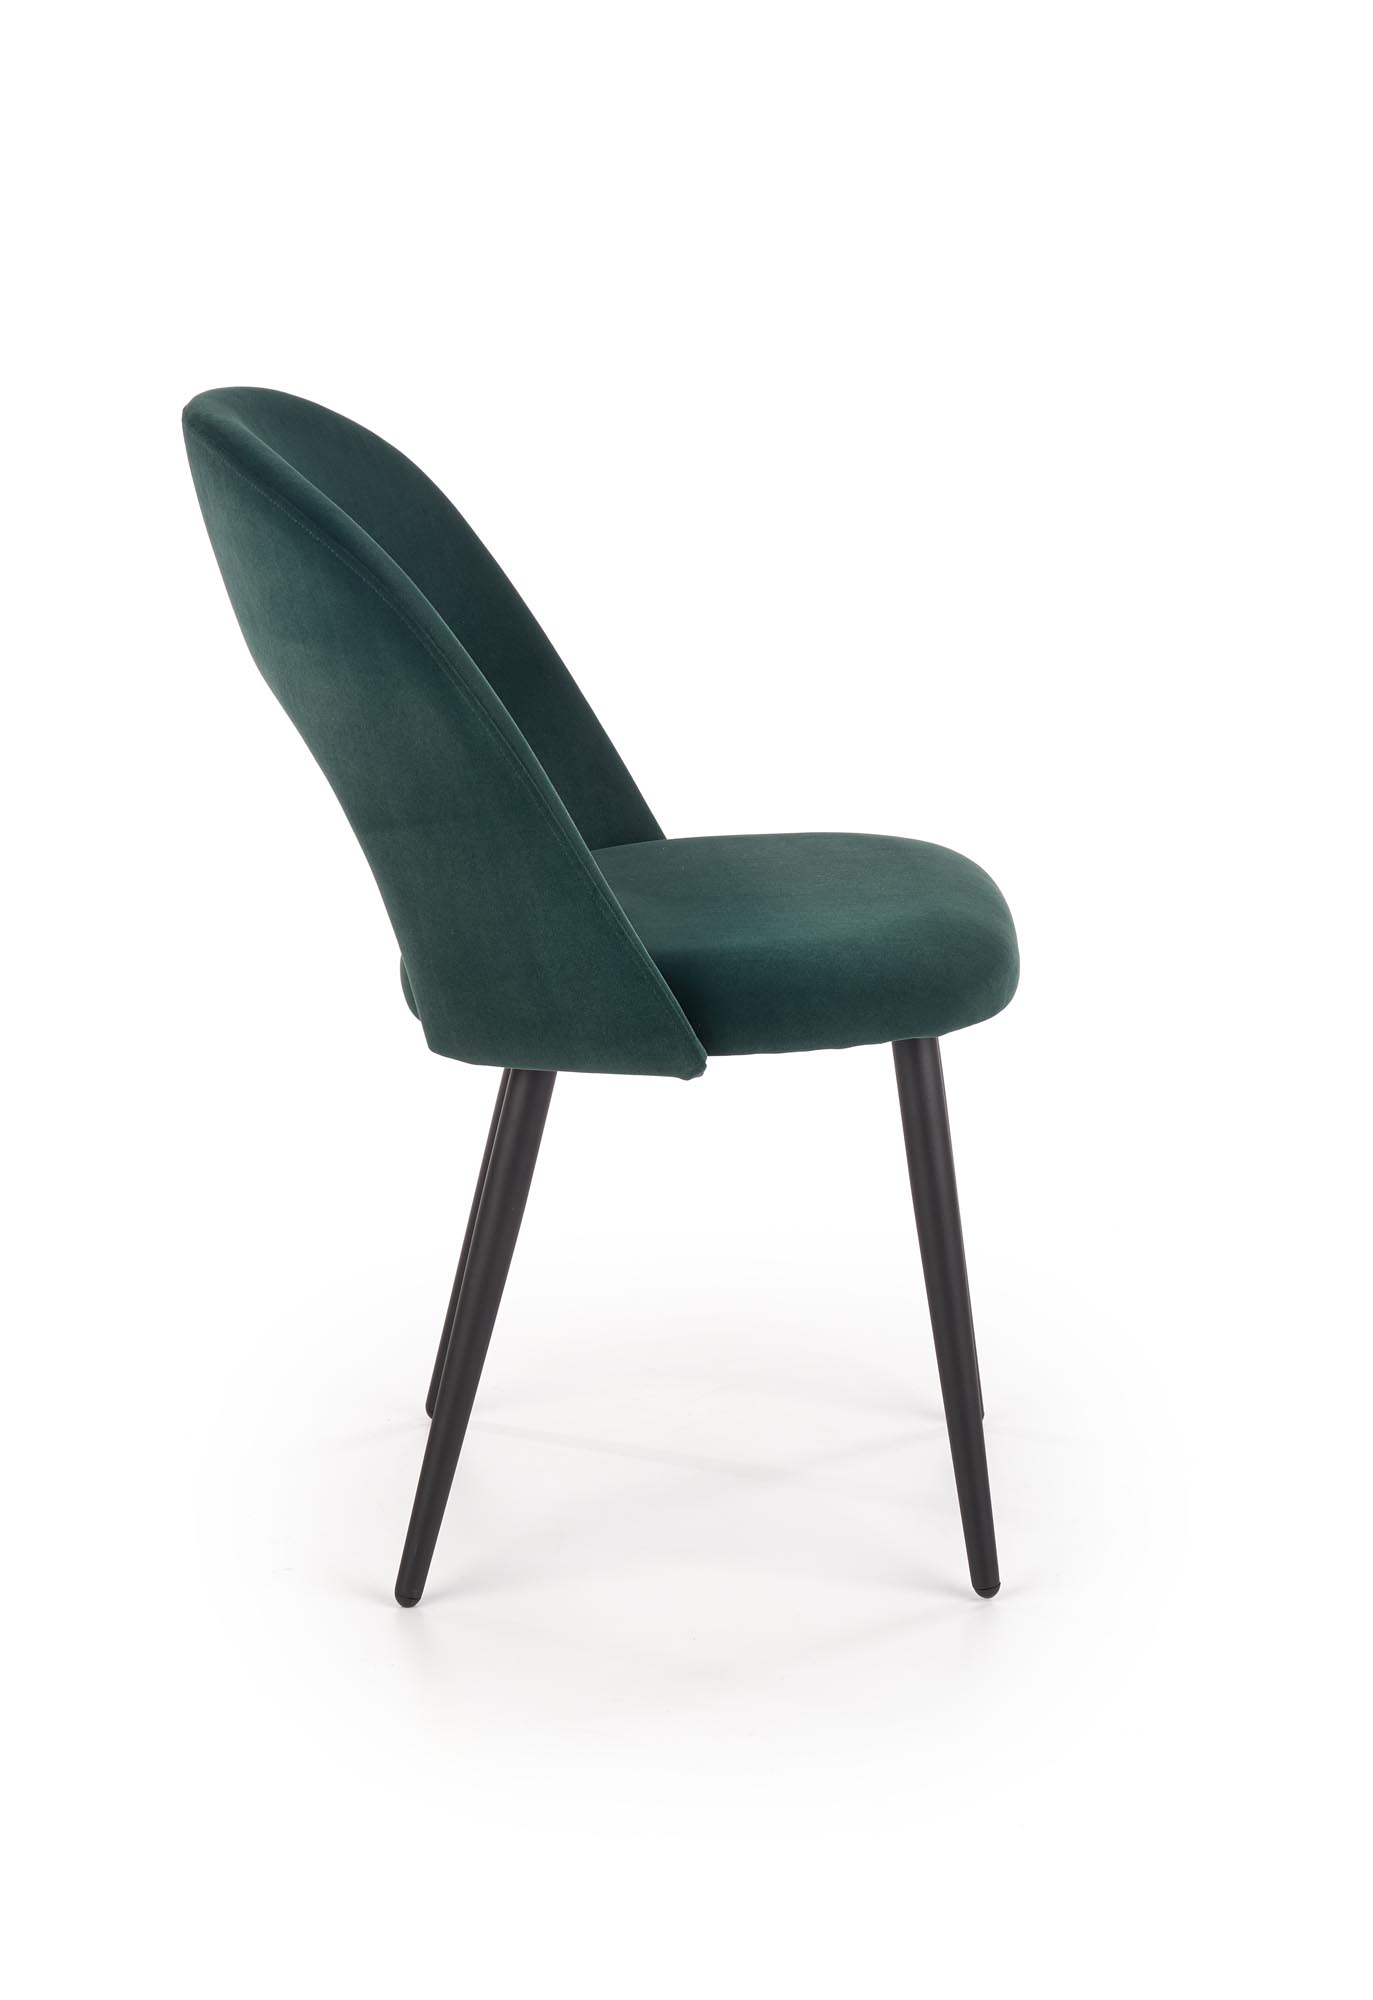 K384 krzesło ciemny zielony / czarny k384 krzesło ciemny zielony / czarny